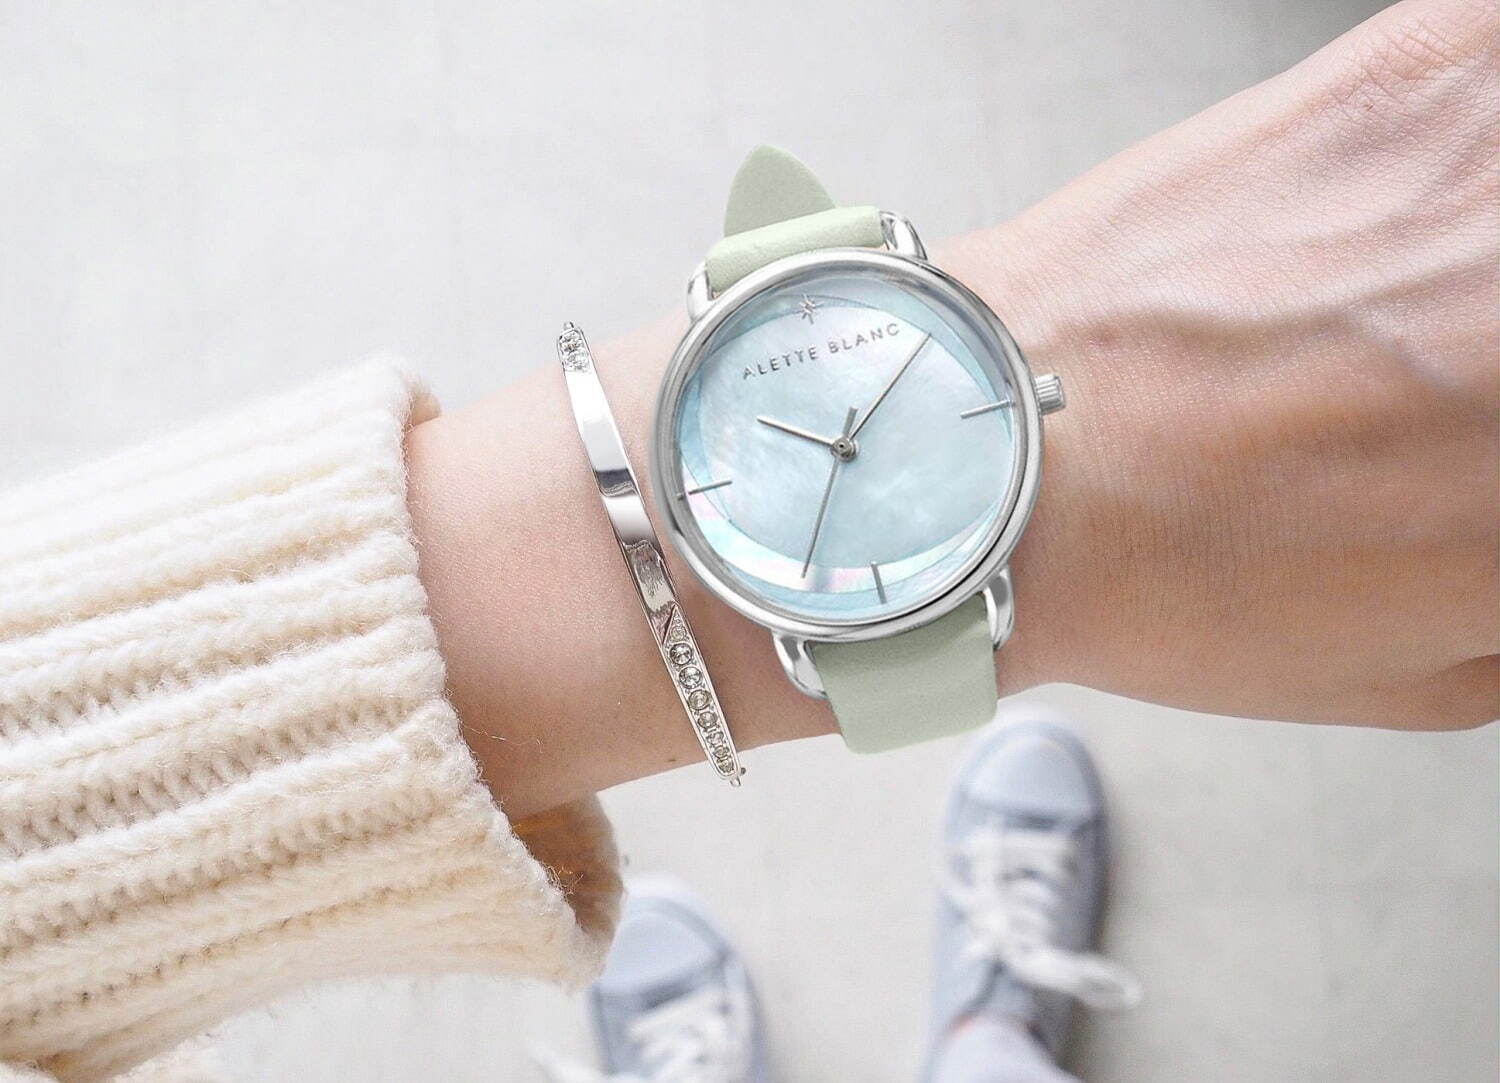 アレットブランの腕時計 ブリーズ パステルレザーベルトの新作 オーロラ色に煌めく文字盤 ファッションプレス